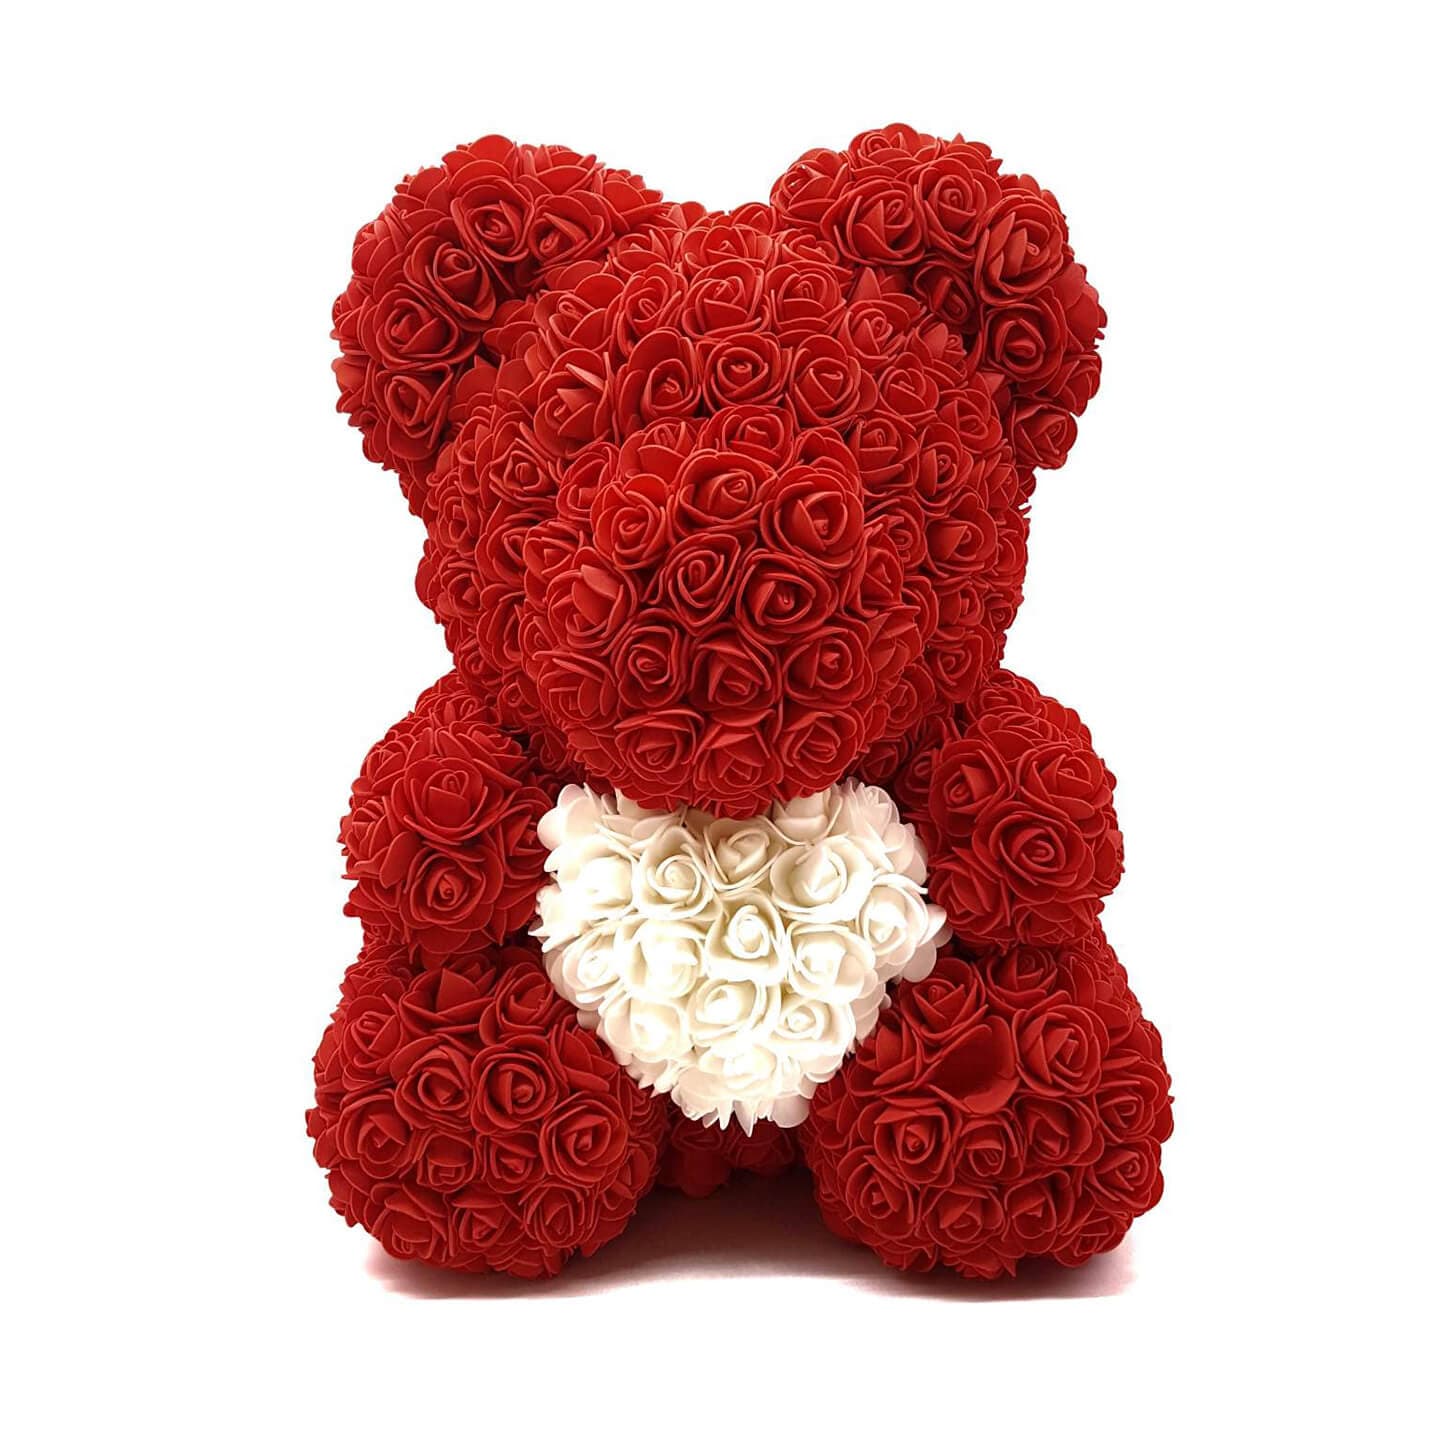 Мишка из роз купить. Мишка из роз 40 см. Мишка из роз с сердцем, 40 см, красный. Медведь из роз. Цветочный мишка.